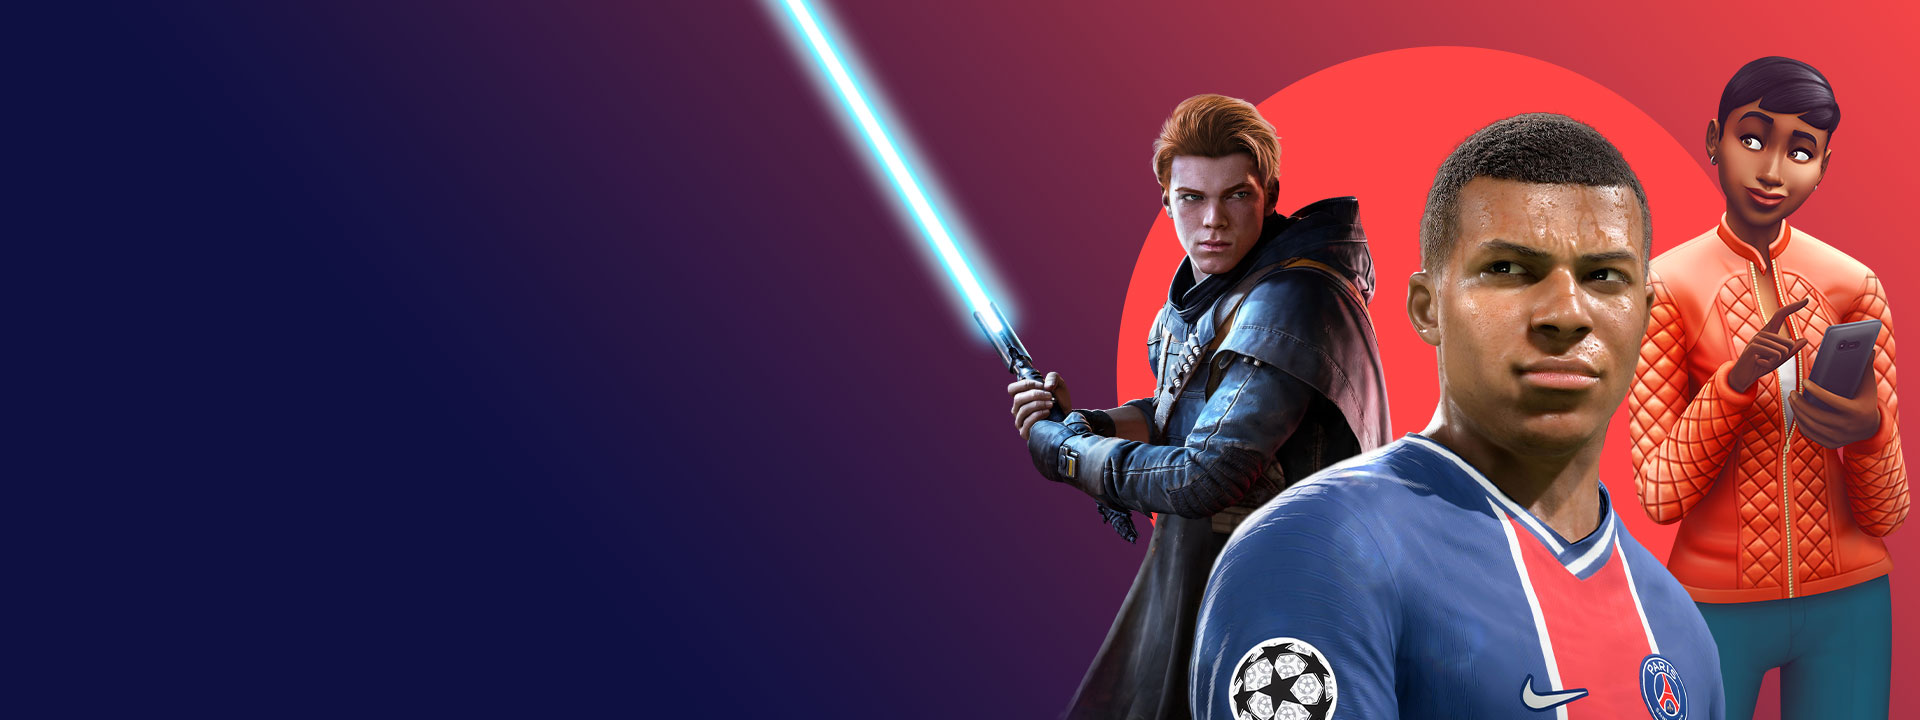 Artwork von EA-Spielen, die in Xbox Game Pass enthalten sind, darunter Star Wars Jedi: Fallen Order, FIFA 22 und The Sims 4.